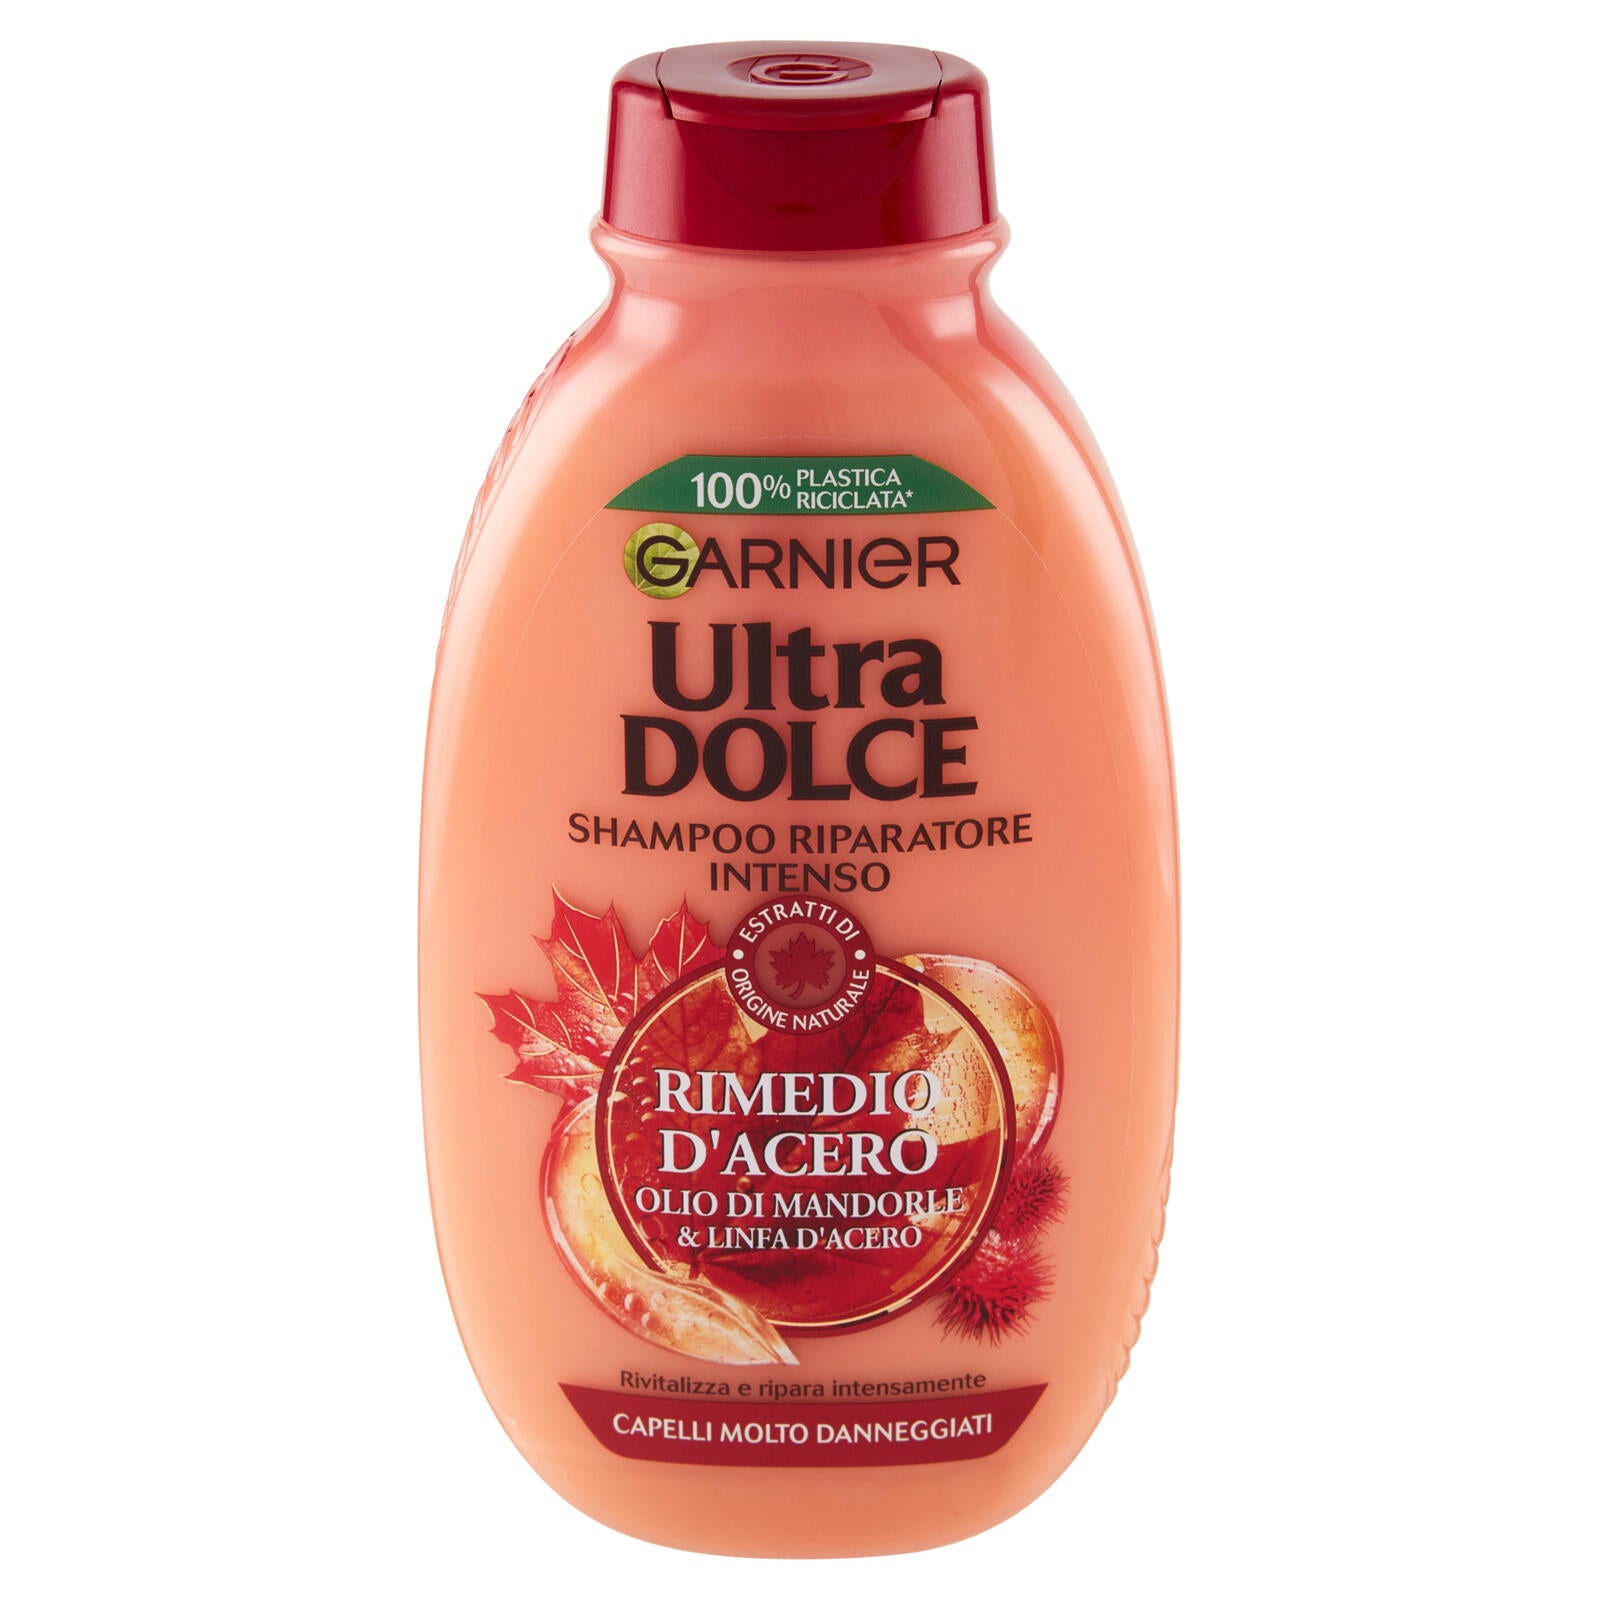 Garnier Ultra Dolce Shampoo Rimedio d'Acero per capelli danneggiati, senza parabeni, 250 ml